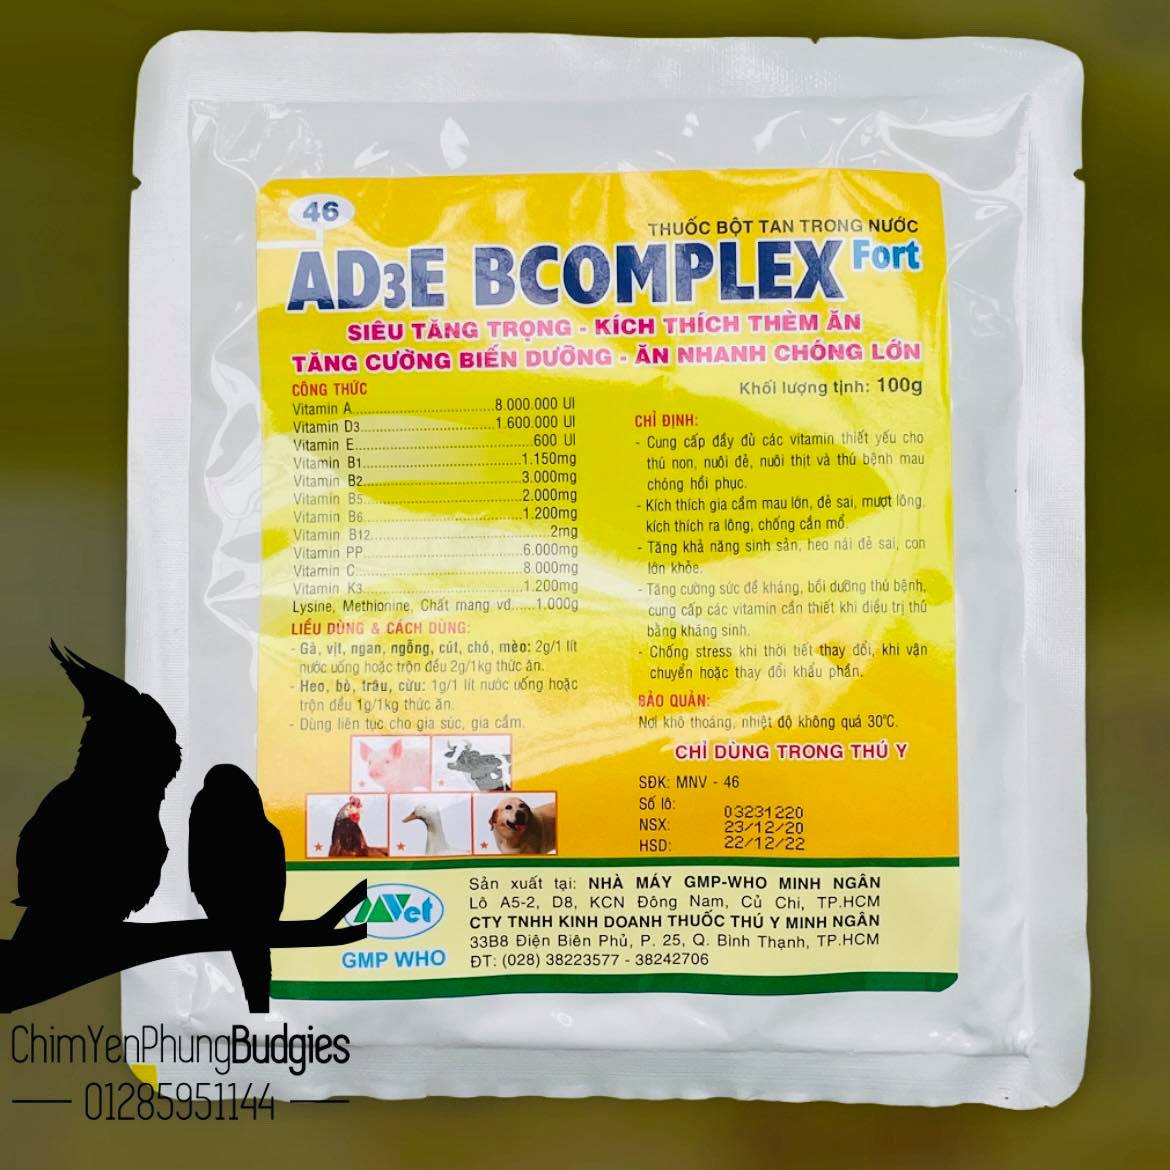 2 gói Vitamin AD3E Bcomplex cho vật nuôi, tăng trọng, kích thích thèm ăn.